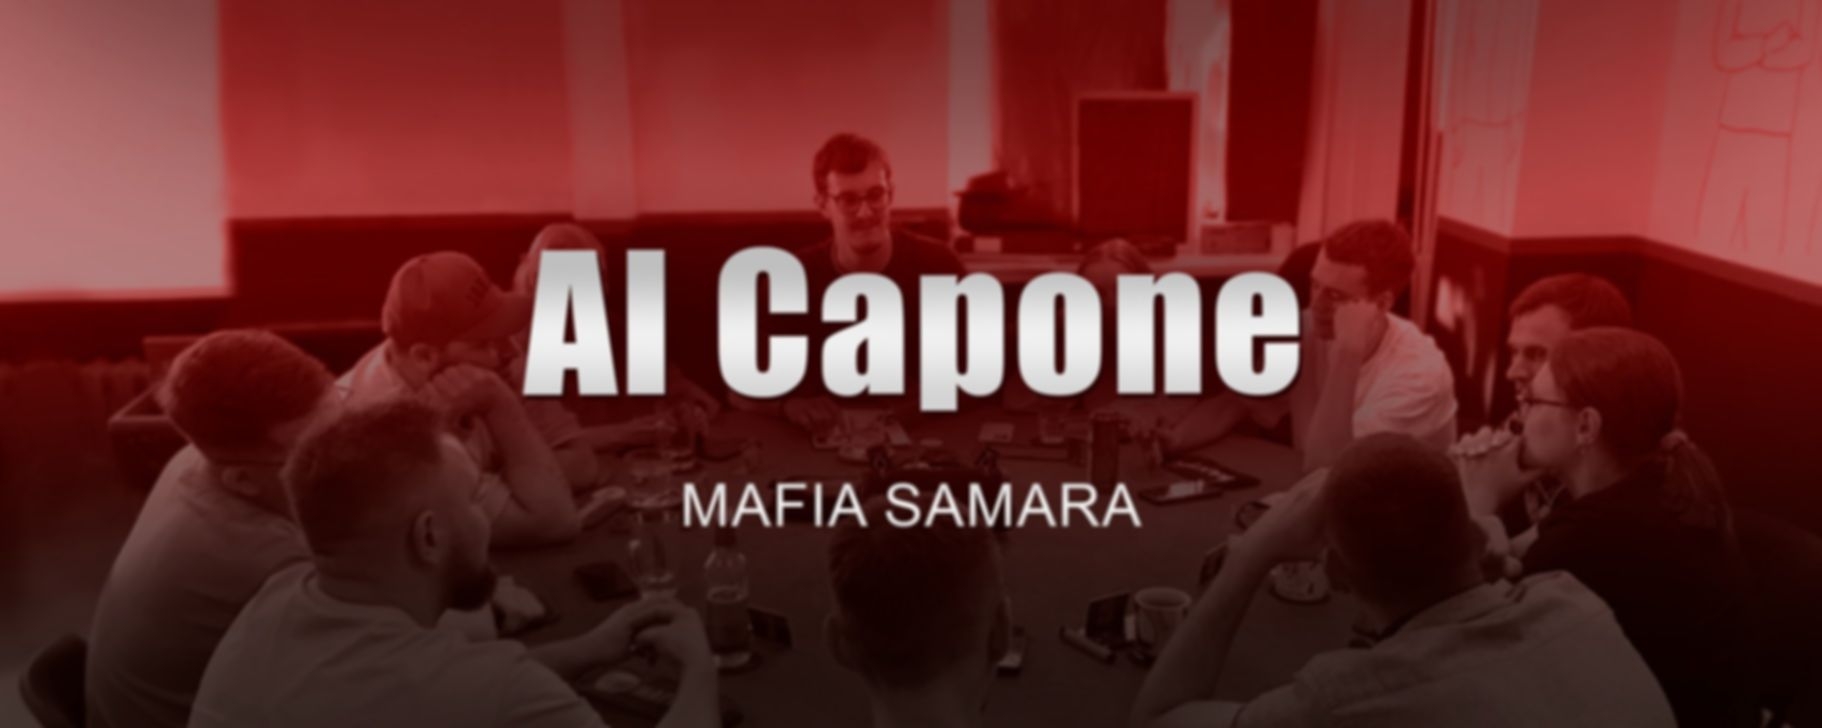 Аl Capone - фото